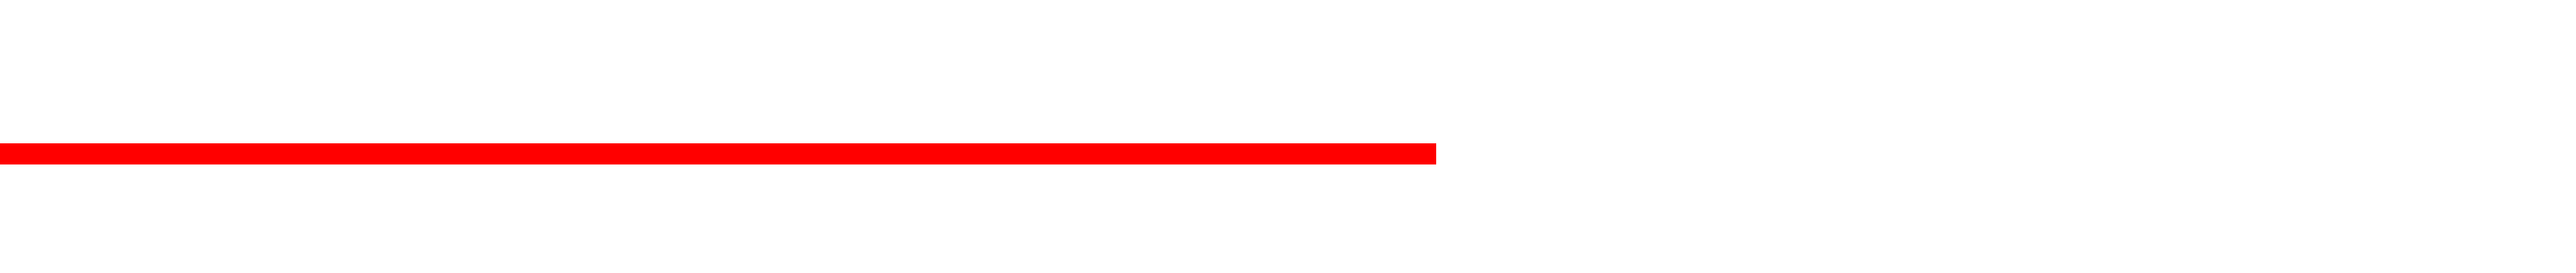 Standard Artists Logo